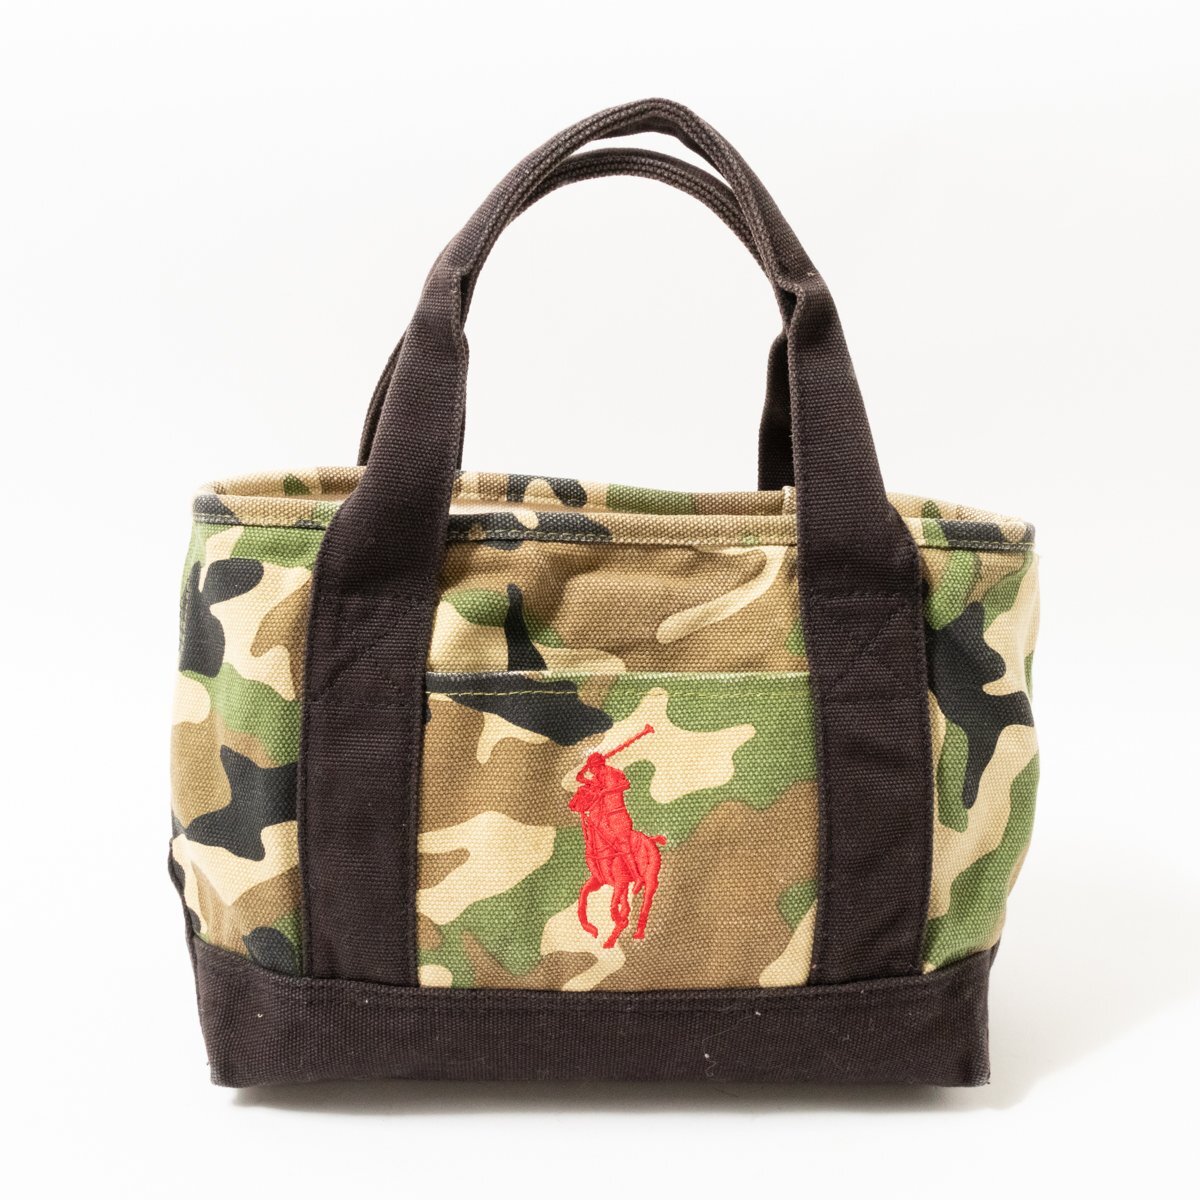 [1 иен старт ]POLO RALPH LAUREN Polo Ralph Lauren ручная сумочка в наличии сумка хлопок парусина земля камуфляж casual женский женщина 